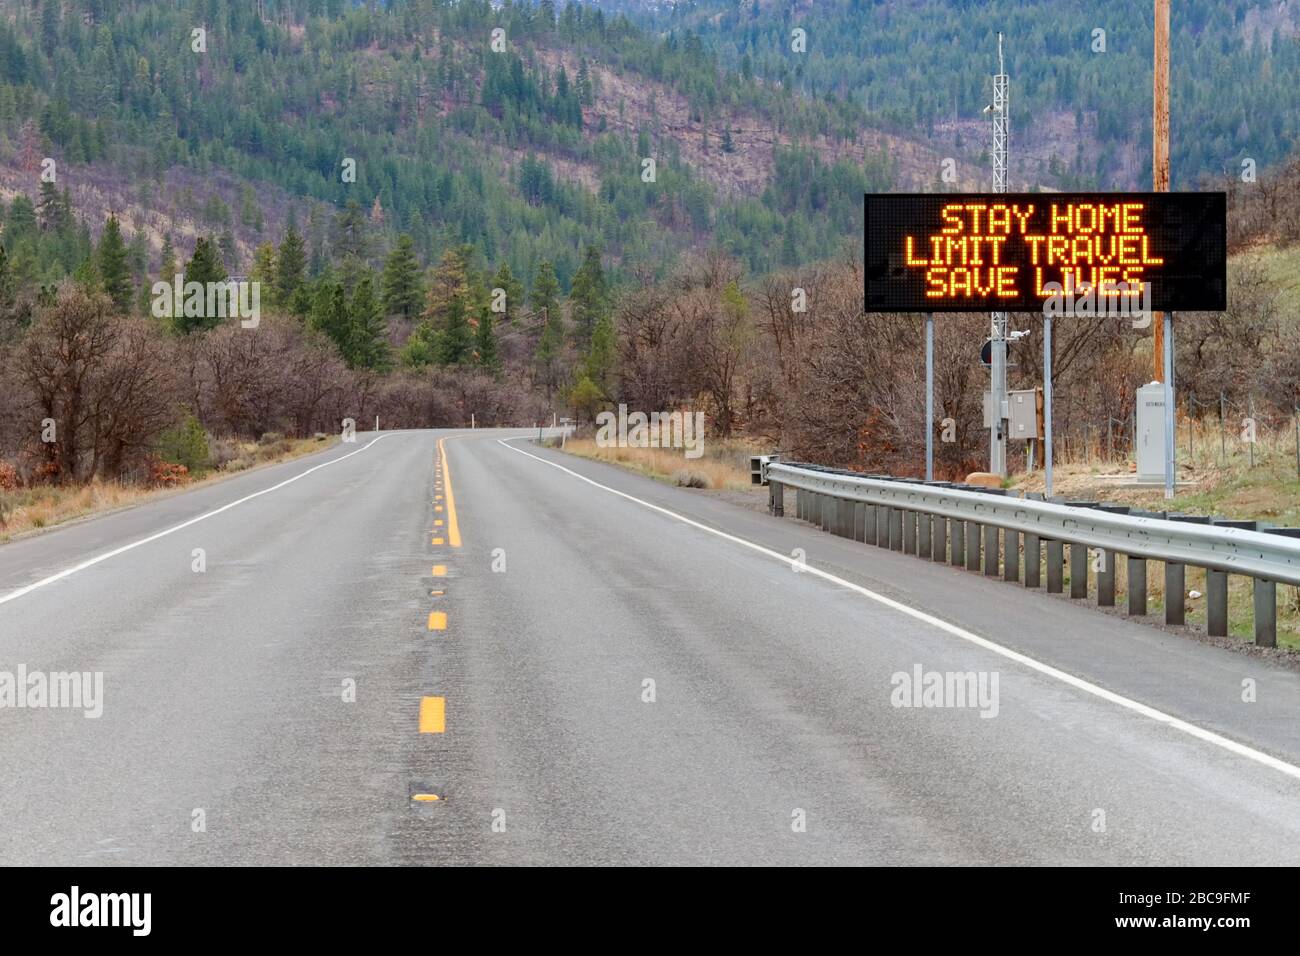 Toppenish, WA / USA - 28 mars 2020: Panneau électronique le long de la US Highway 97 informant les gens de rester à la maison et de sauver des vies en réduisant le risque d'être Banque D'Images